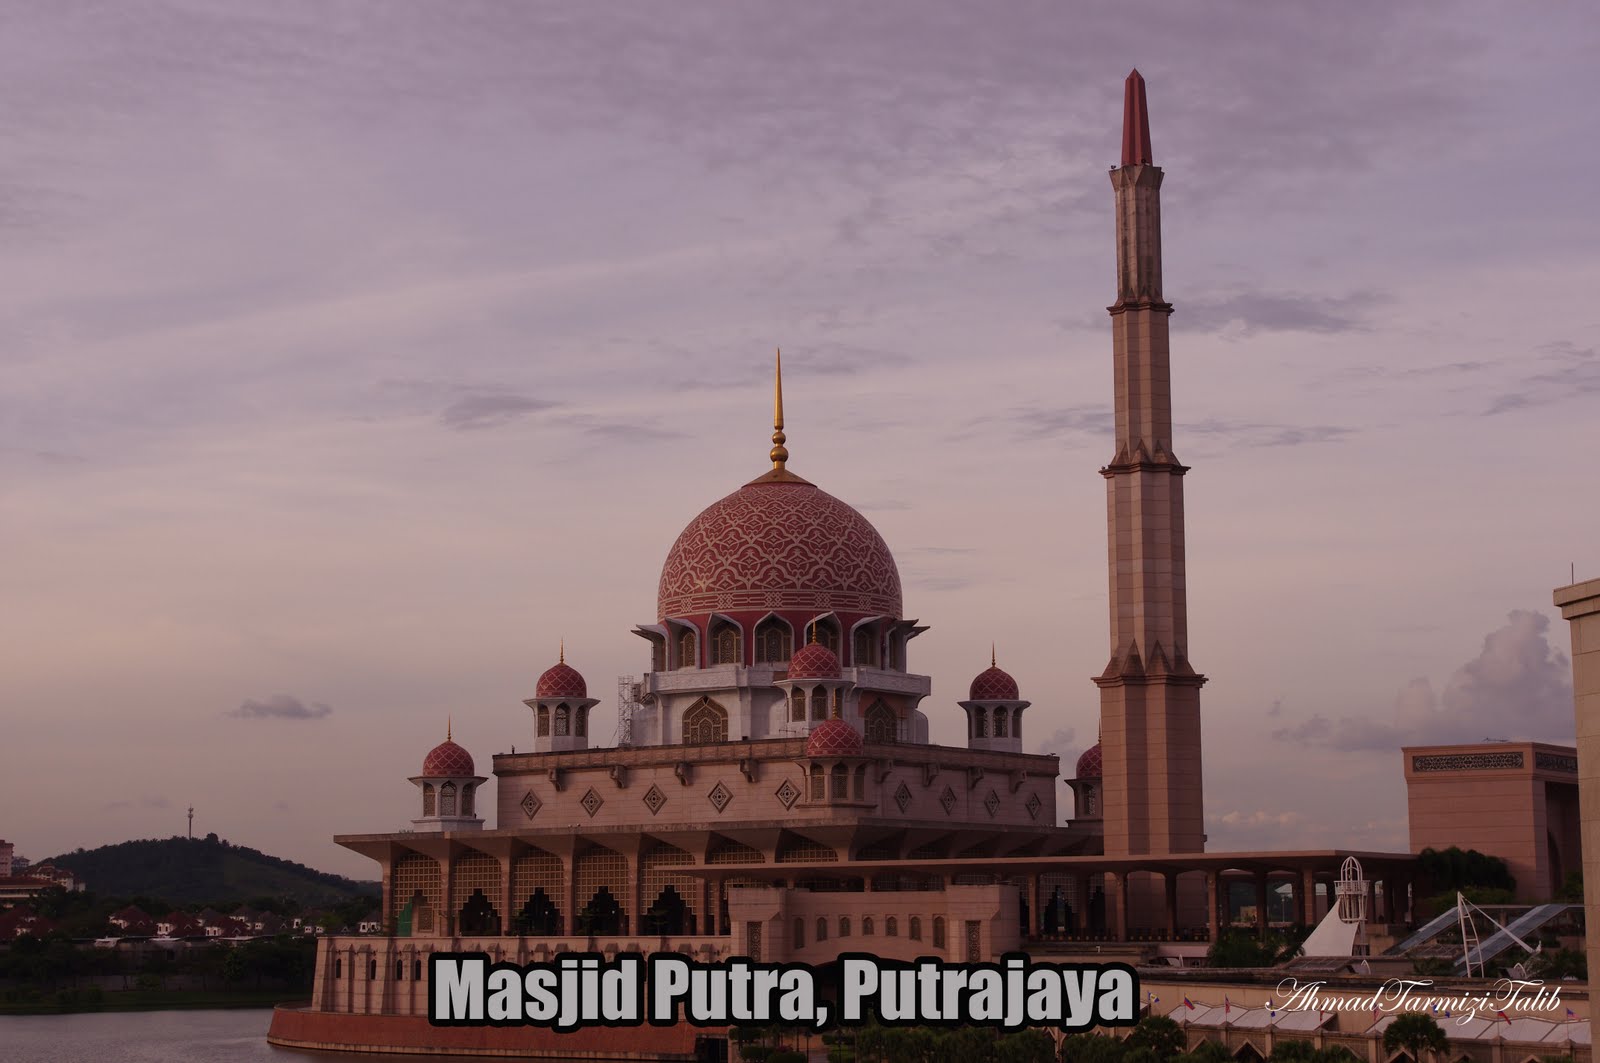 Blog Ahmad Tarmizi Talib: Indahnya Masjid